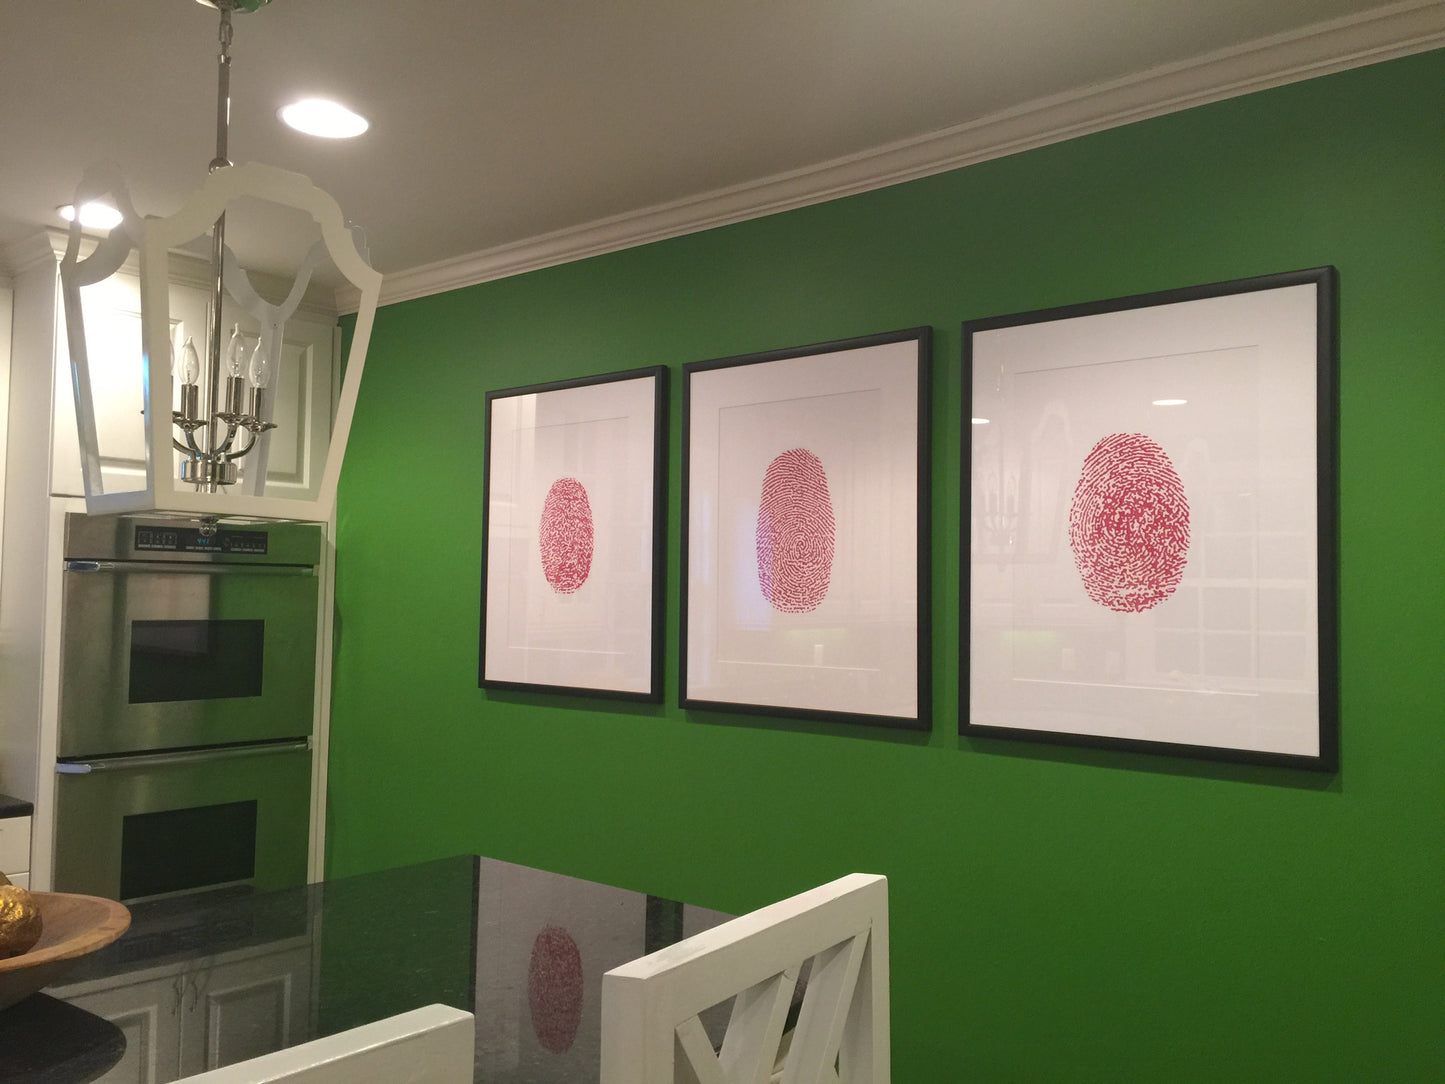 Thumbprint art for modern home decor